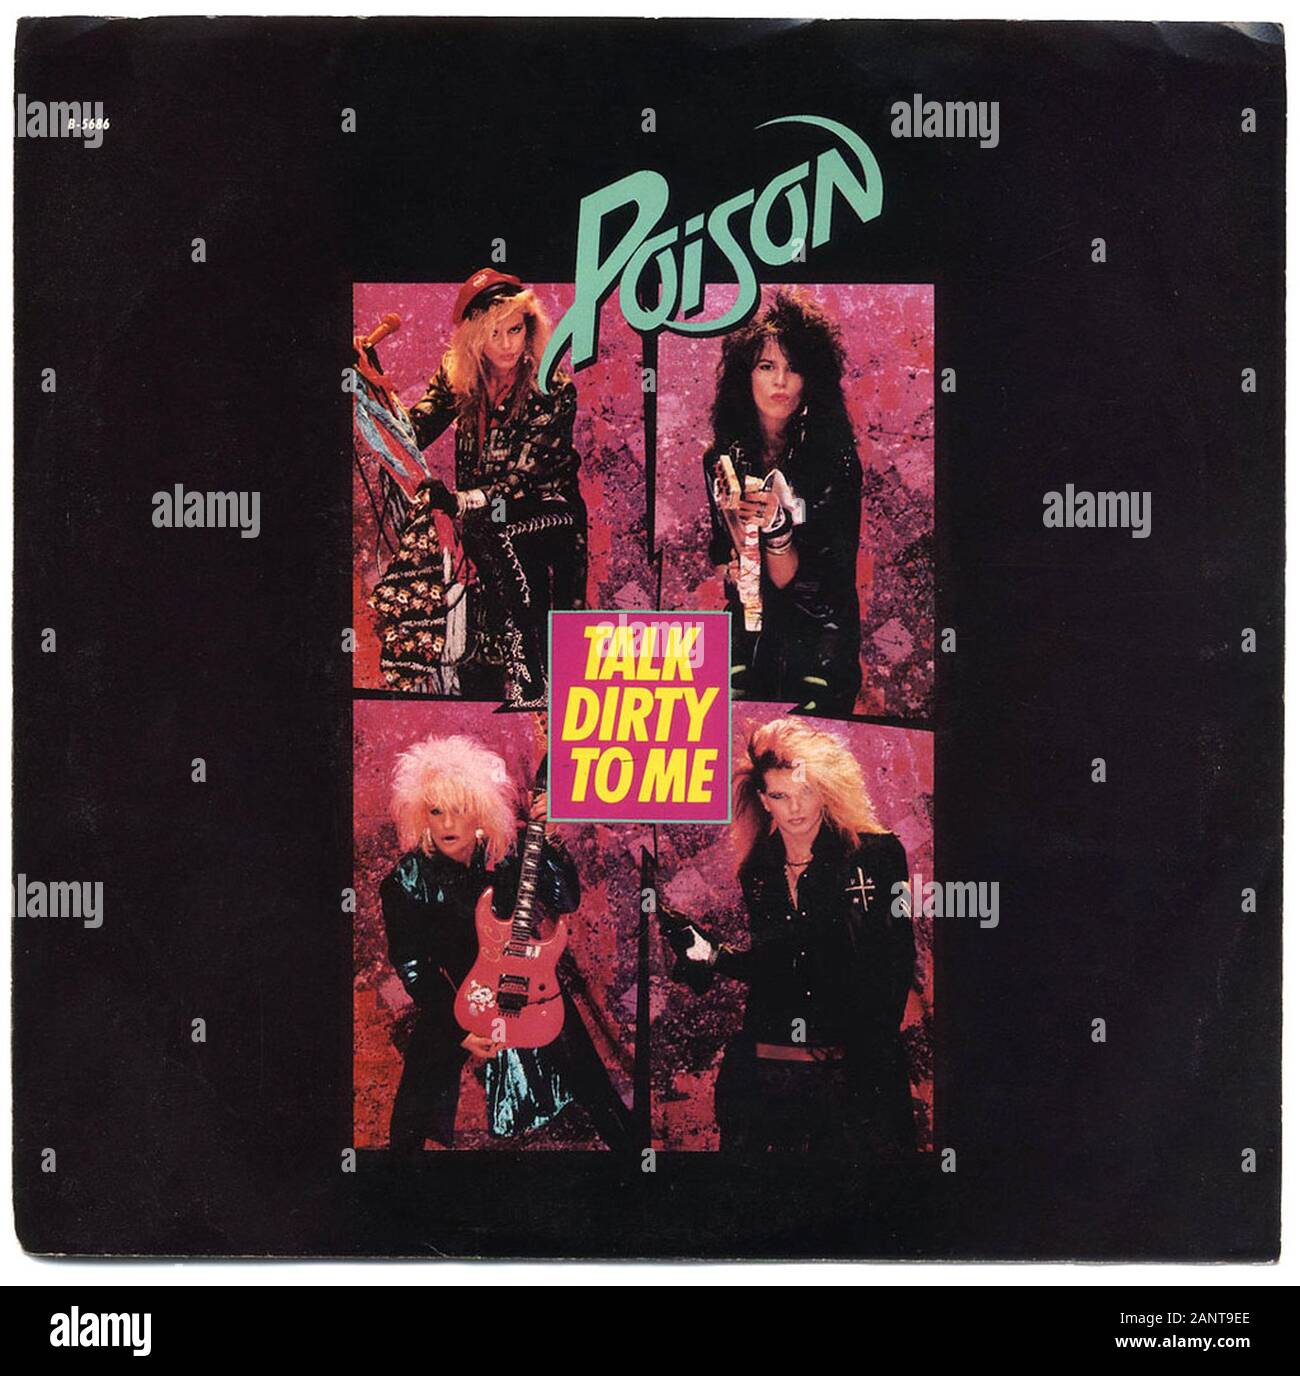 Poison - Talk Dirty To Me - Classic vintage vinyl album Stock Photo - Alamy